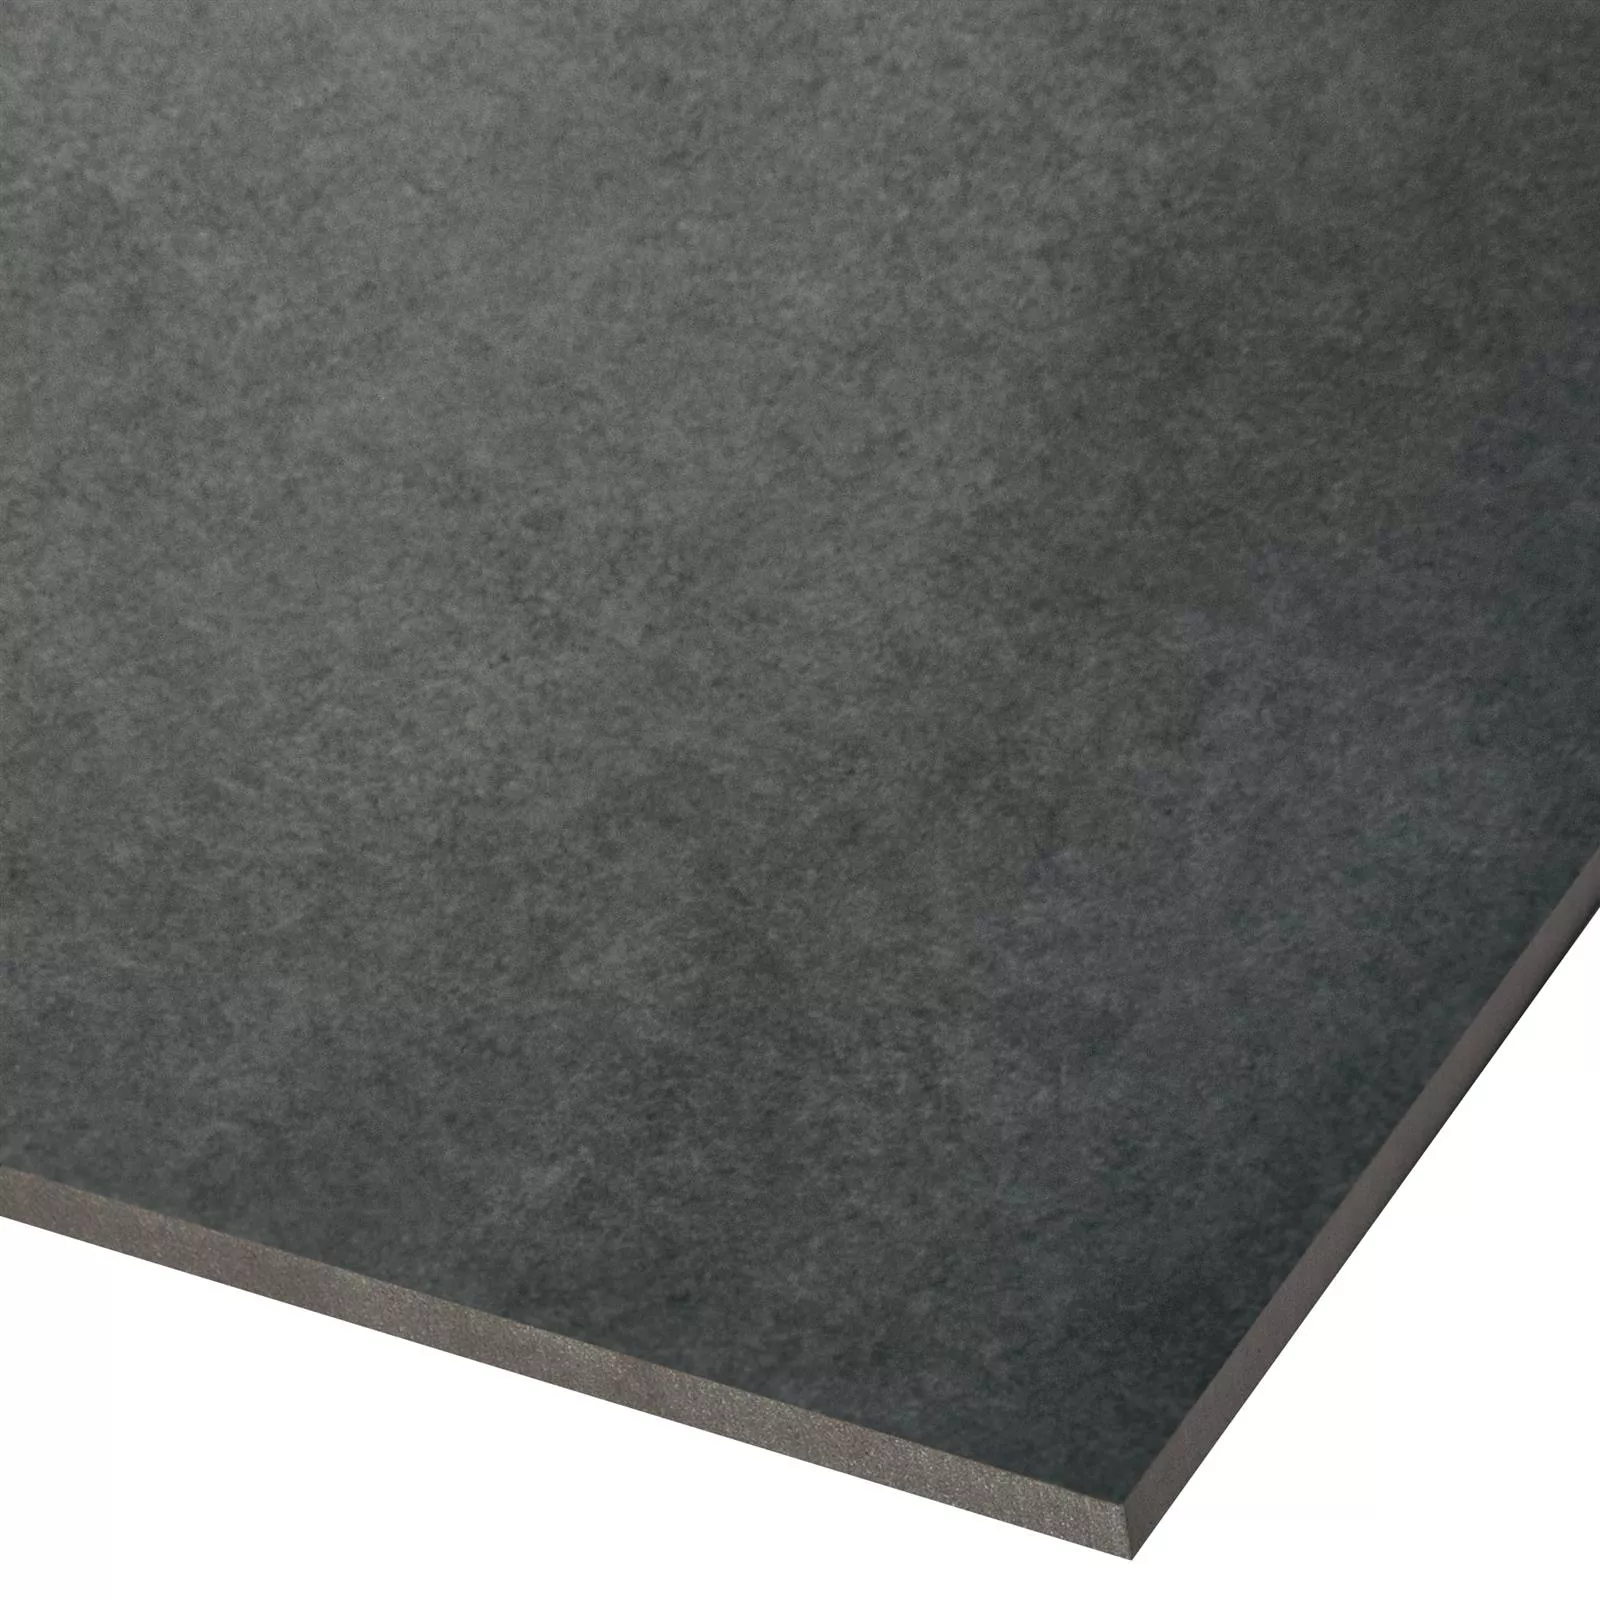 Πλακάκι Δαπέδου Συγκεκριμένη Εμφάνιση Alpago Ανθρακίτης 40x40cm